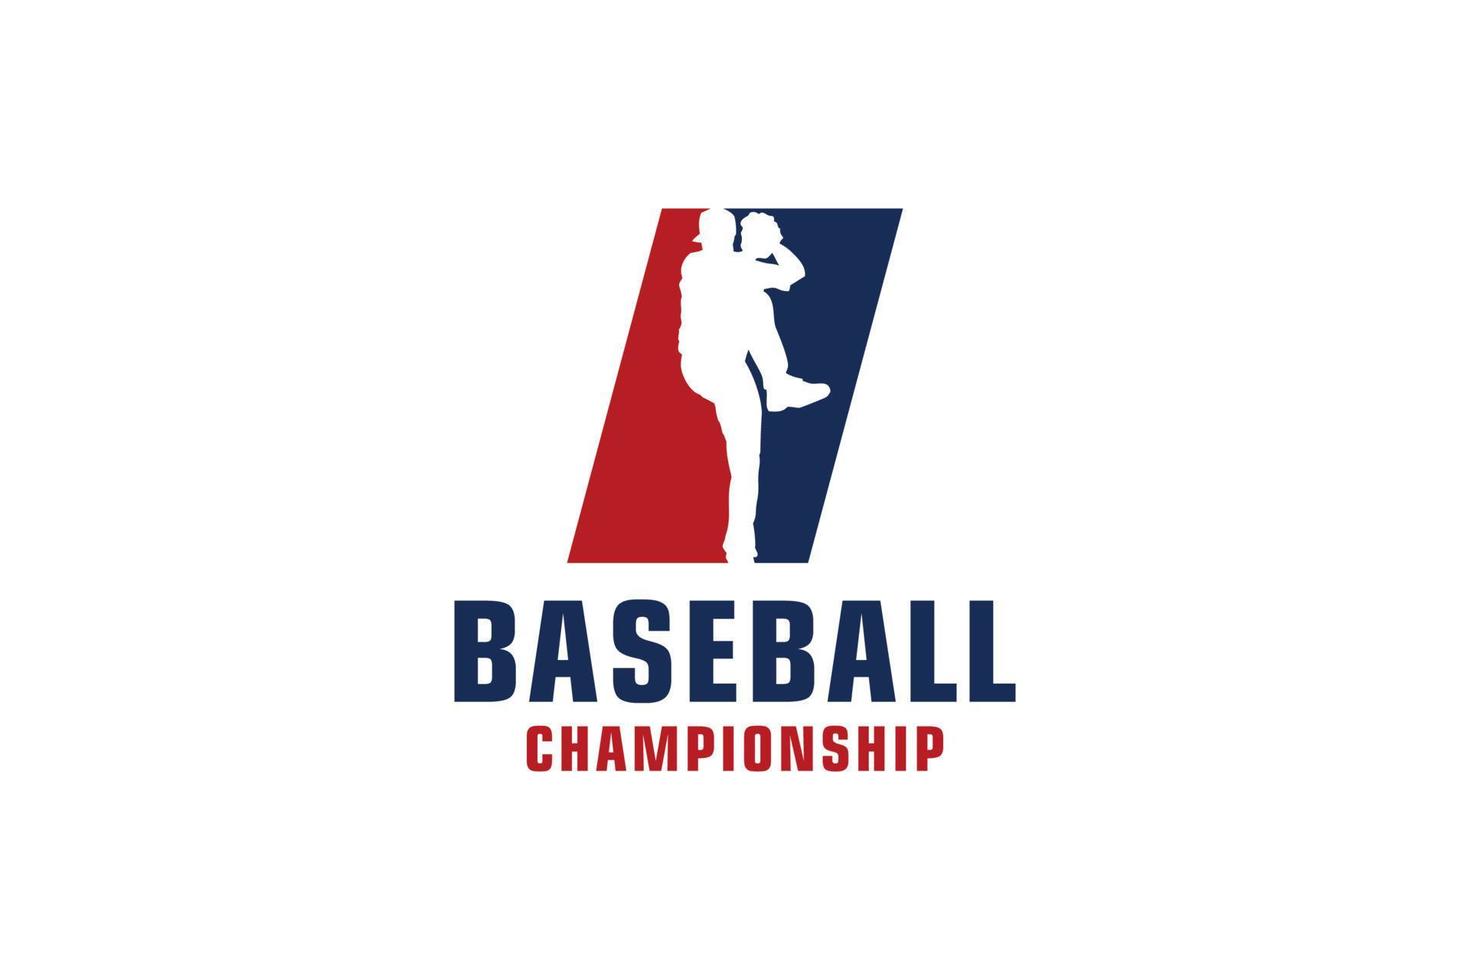 Buchstabe i mit Baseball-Logo-Design. Vektordesign-Vorlagenelemente für Sportteams oder Corporate Identity. vektor